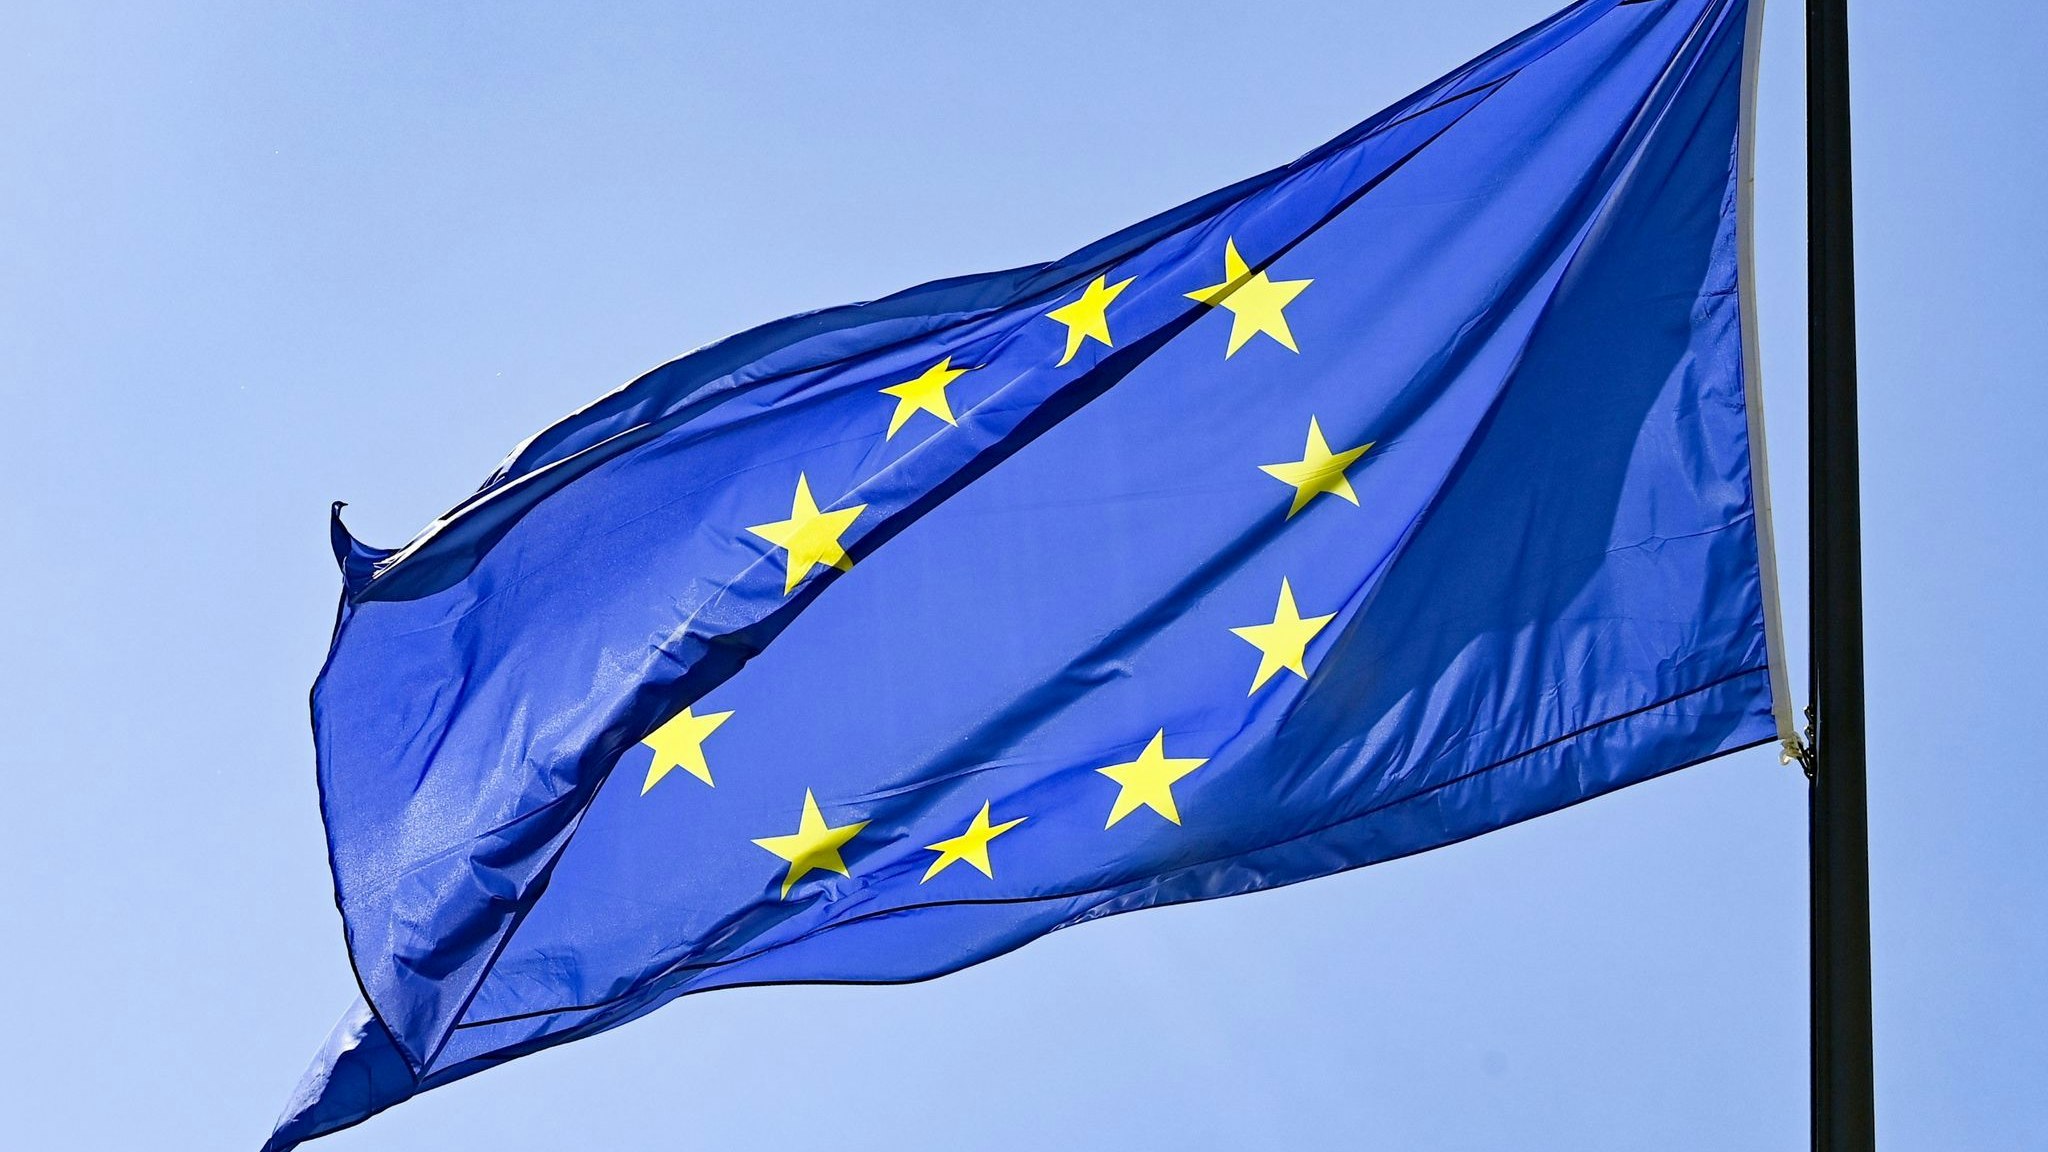 Die Flagge der EU: Um sich von fossilen Brennstoffen aus Russland zu lösen und lieber in erneuerbare Energien zu investieren, werden Gelder neu geordnet. Foto: dpa/Kalaene